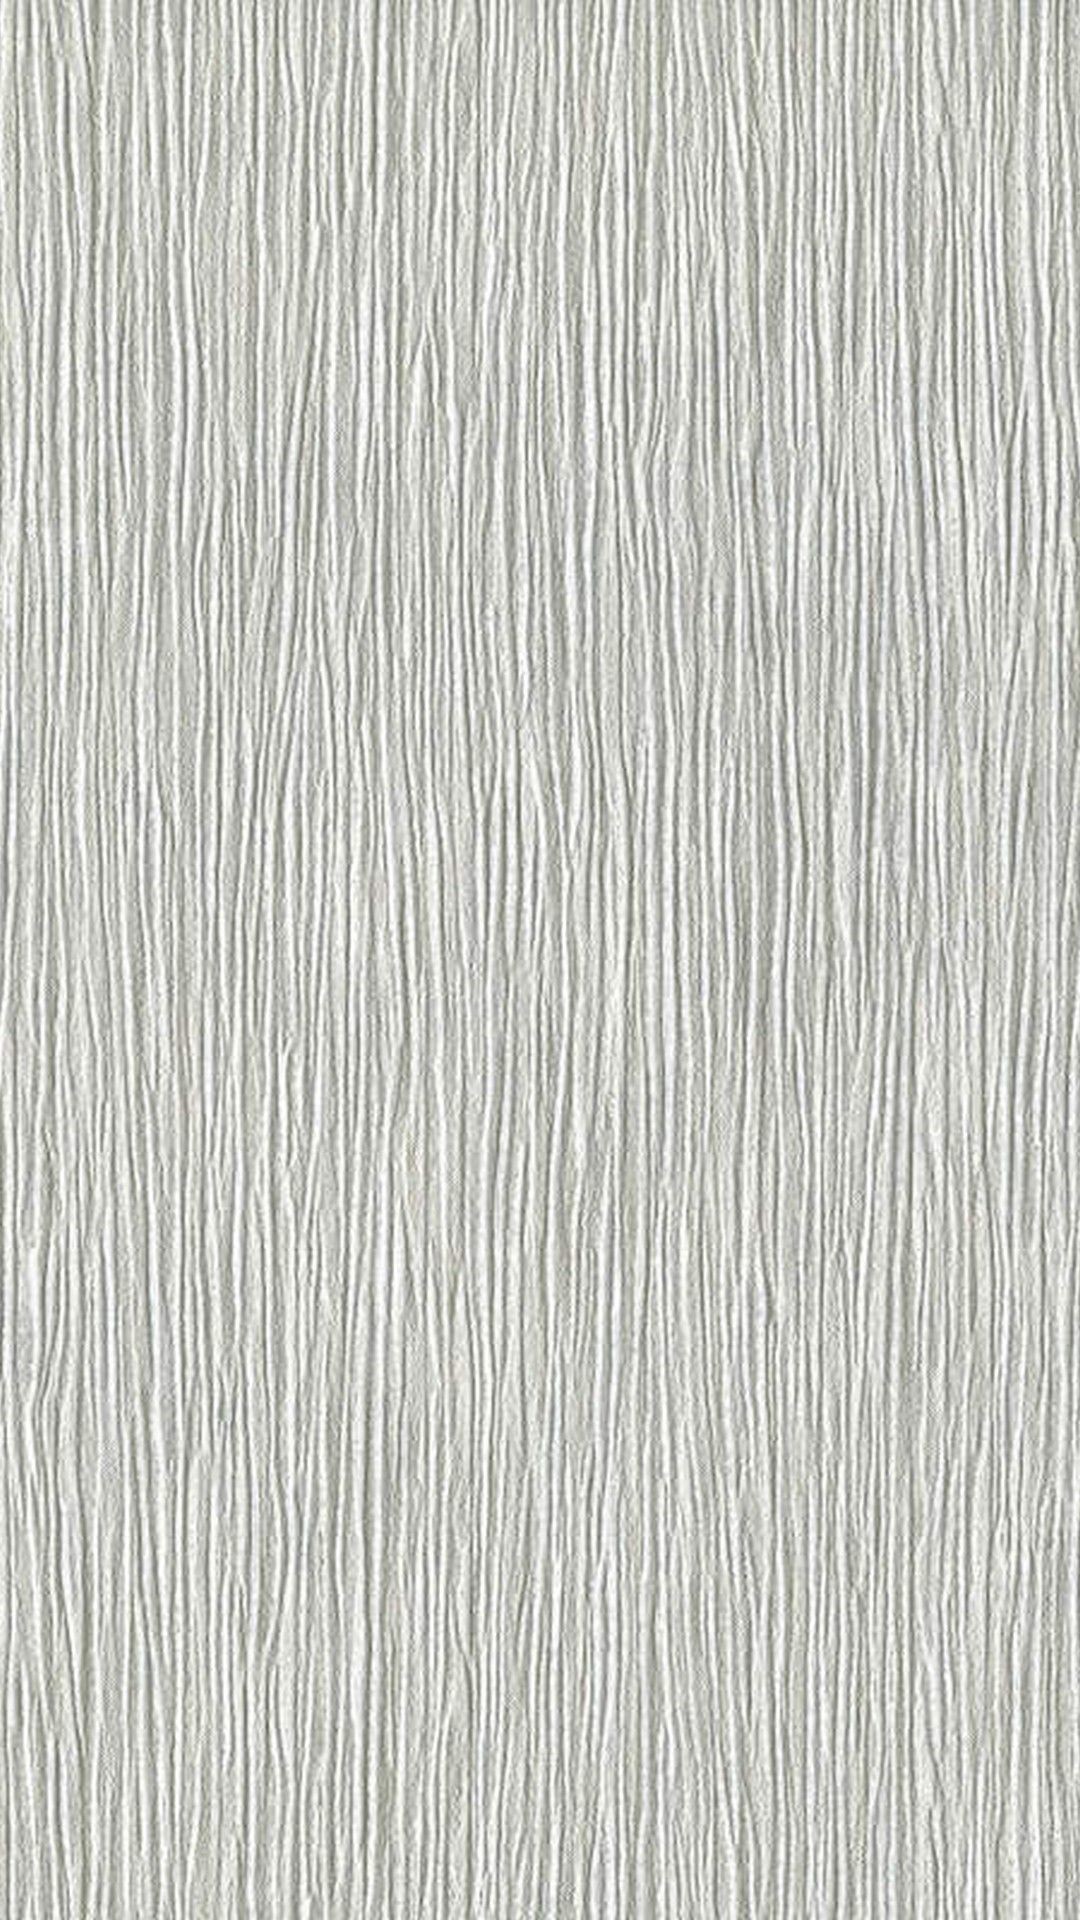 1080x1920 iPhone X Wallpaper Silver - Best iPhone Wallpaper